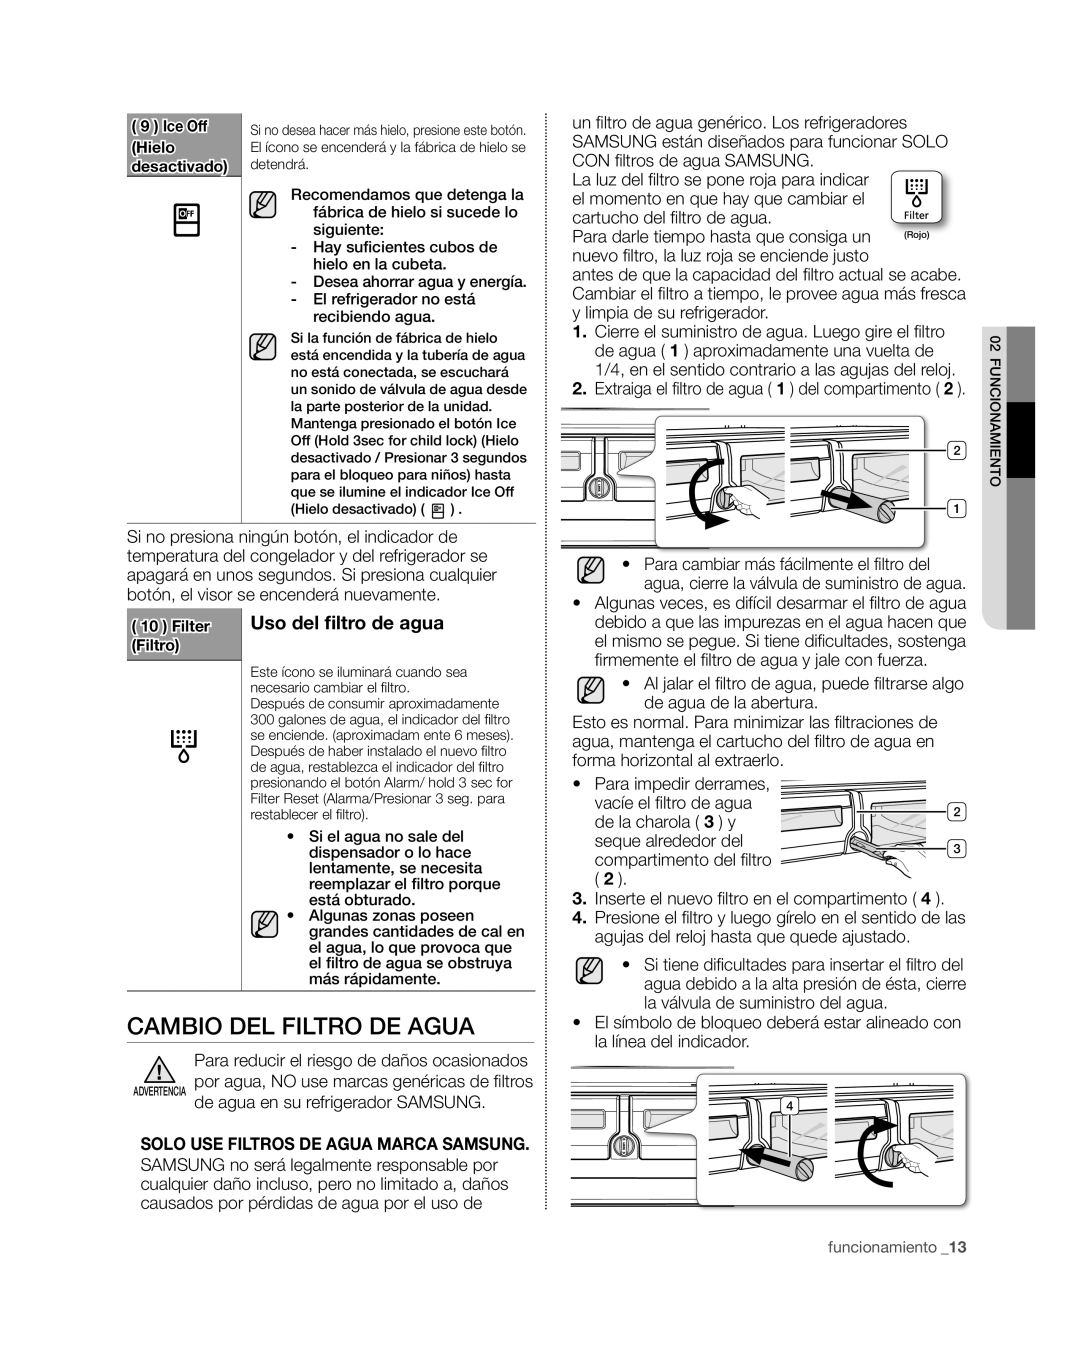 Samsung RF4267HA user manual Cambio del filtro de agua, Uso del filtro de agua, Solo Use Filtros De Agua Marca Samsung 